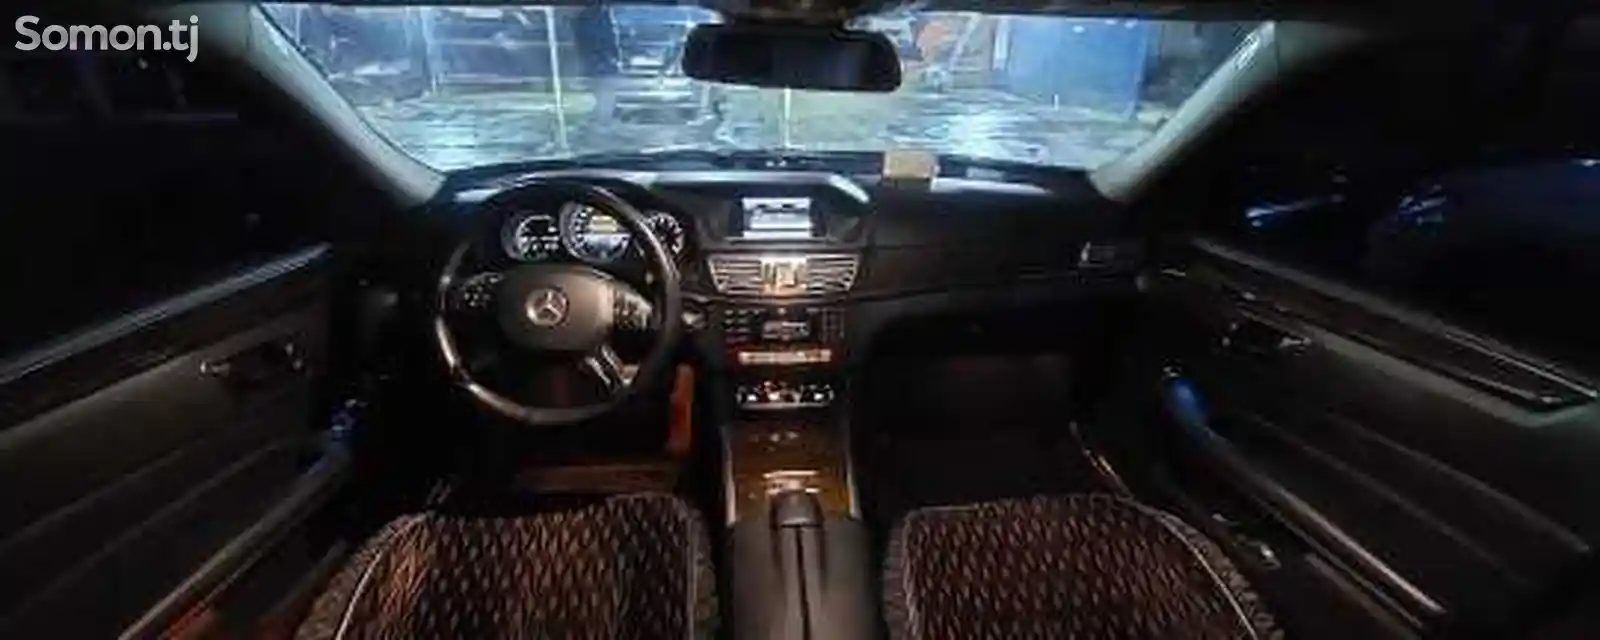 Mercedes-Benz E class, 2015-6